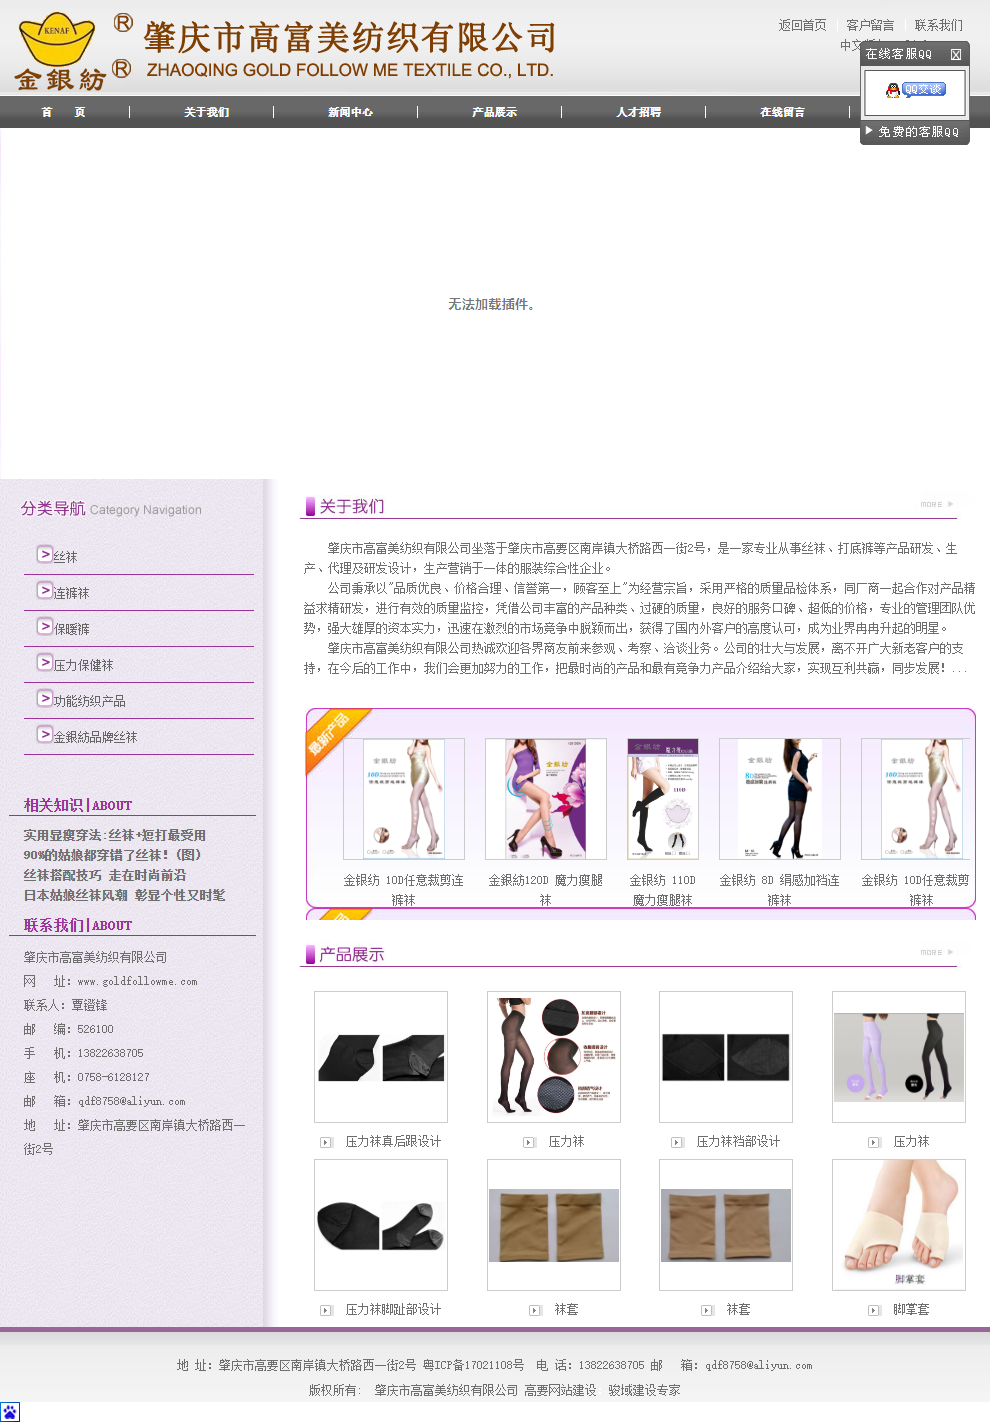 肇庆市高富美纺织有限公司网站案例